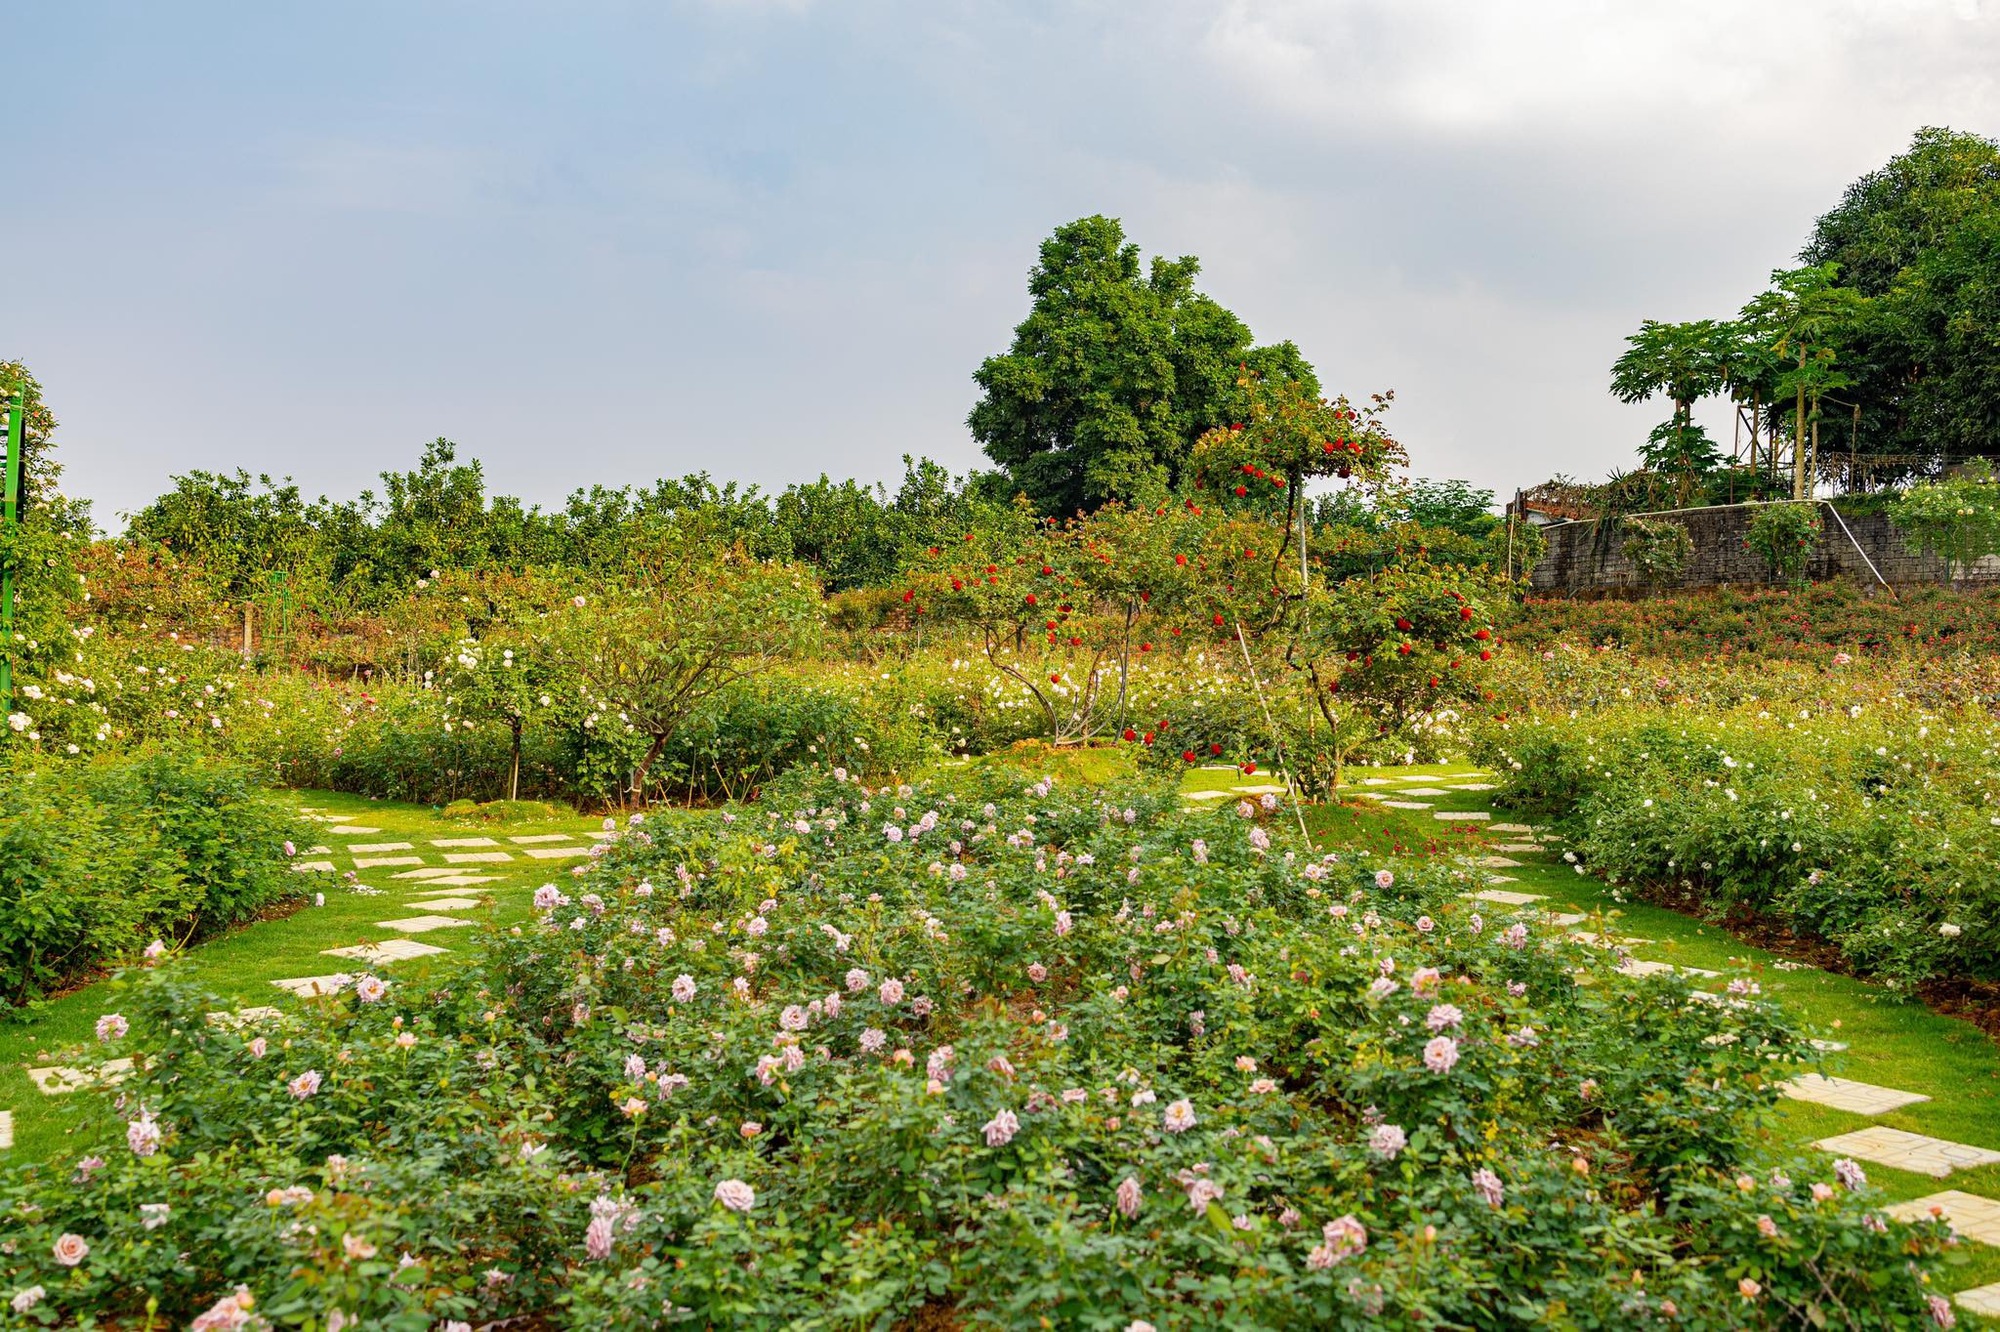 Mùng 3 Tết đến thăm vườn hồng rộng 6.000m² của người phụ nữ Hà Nội - Ảnh 3.